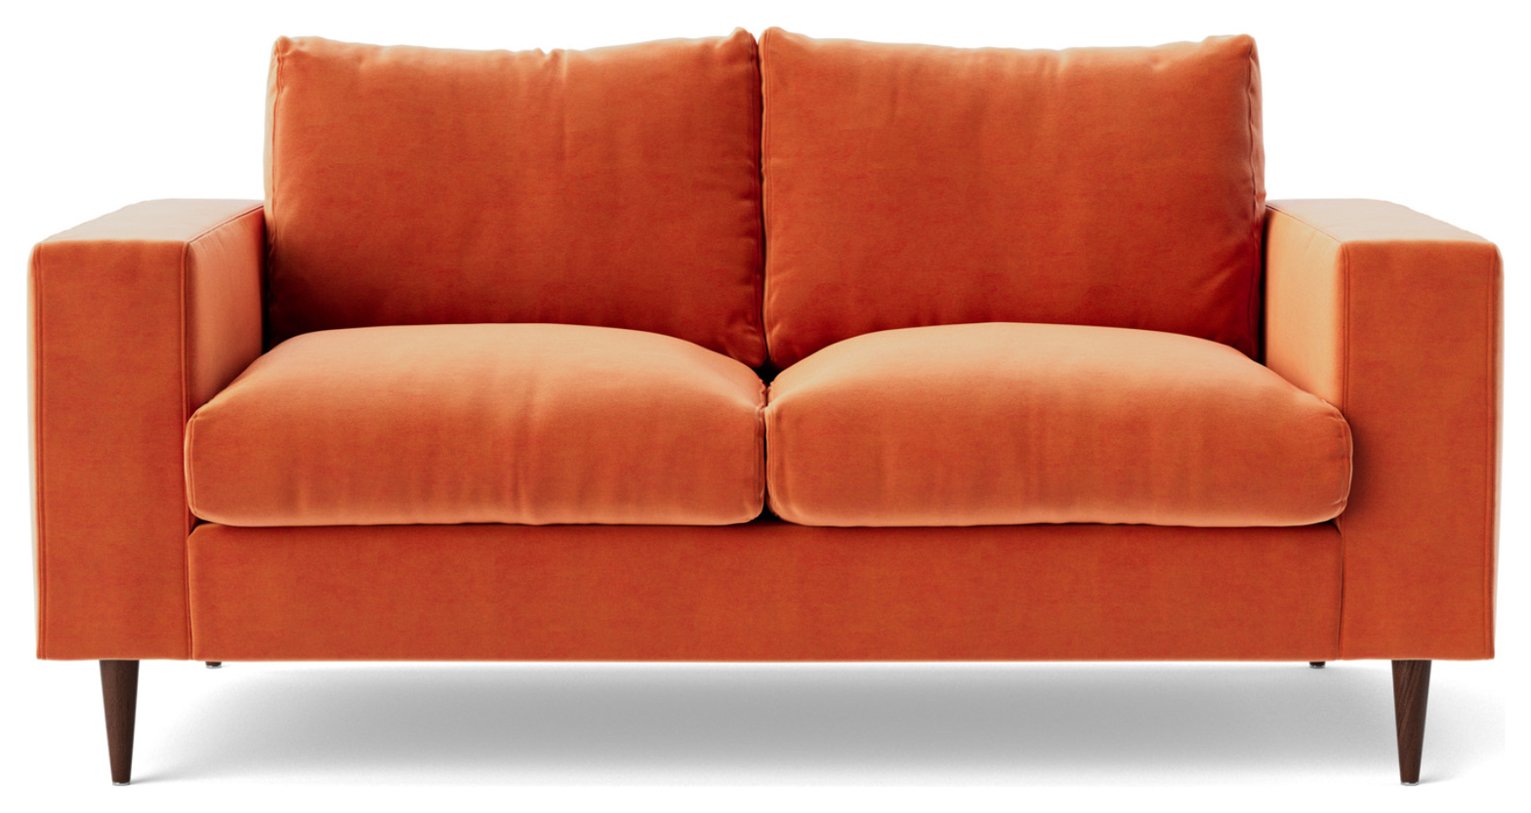 Swoon Evesham Velvet 2 Seater Sofa - Burnt Orange